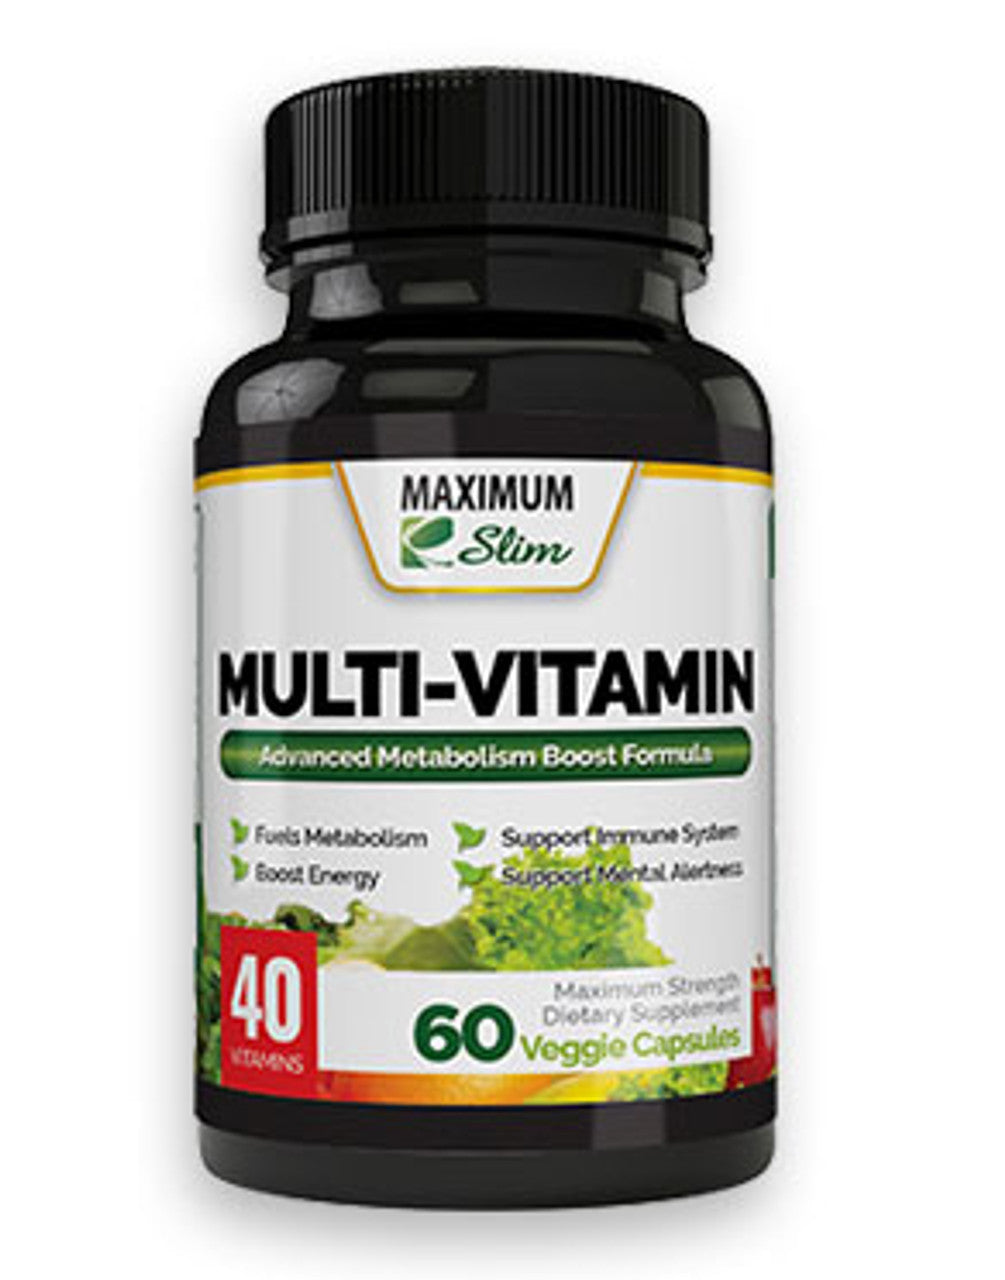 Maximum Slim Multi-Vitamin